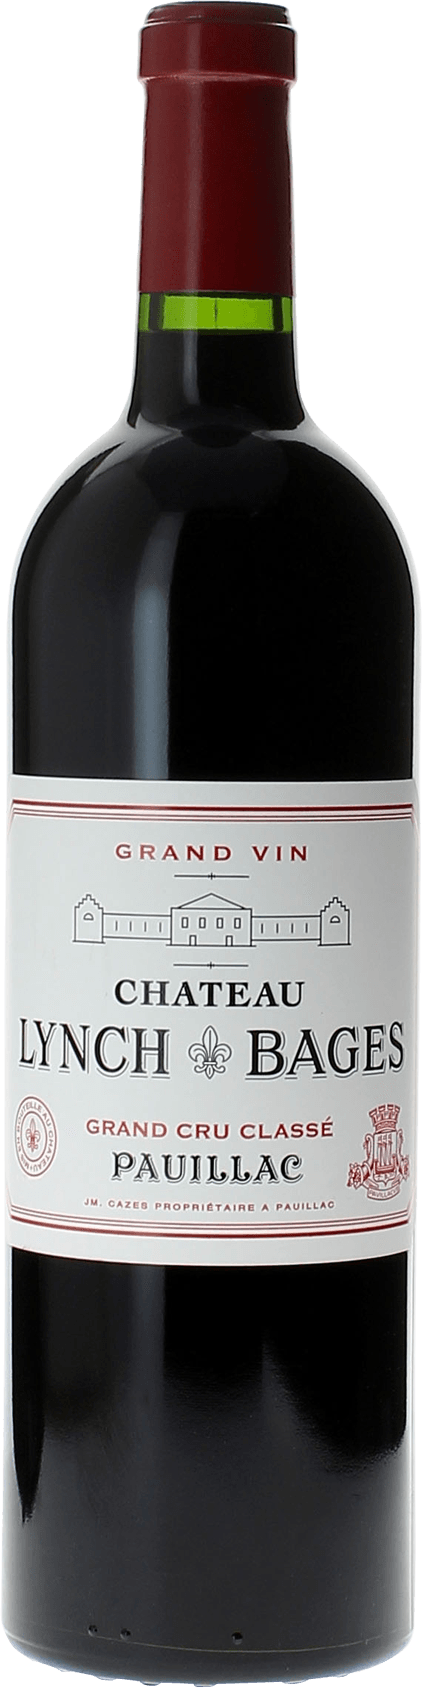 Lynch bages 1992 5 me Grand cru class Pauillac, Bordeaux rouge